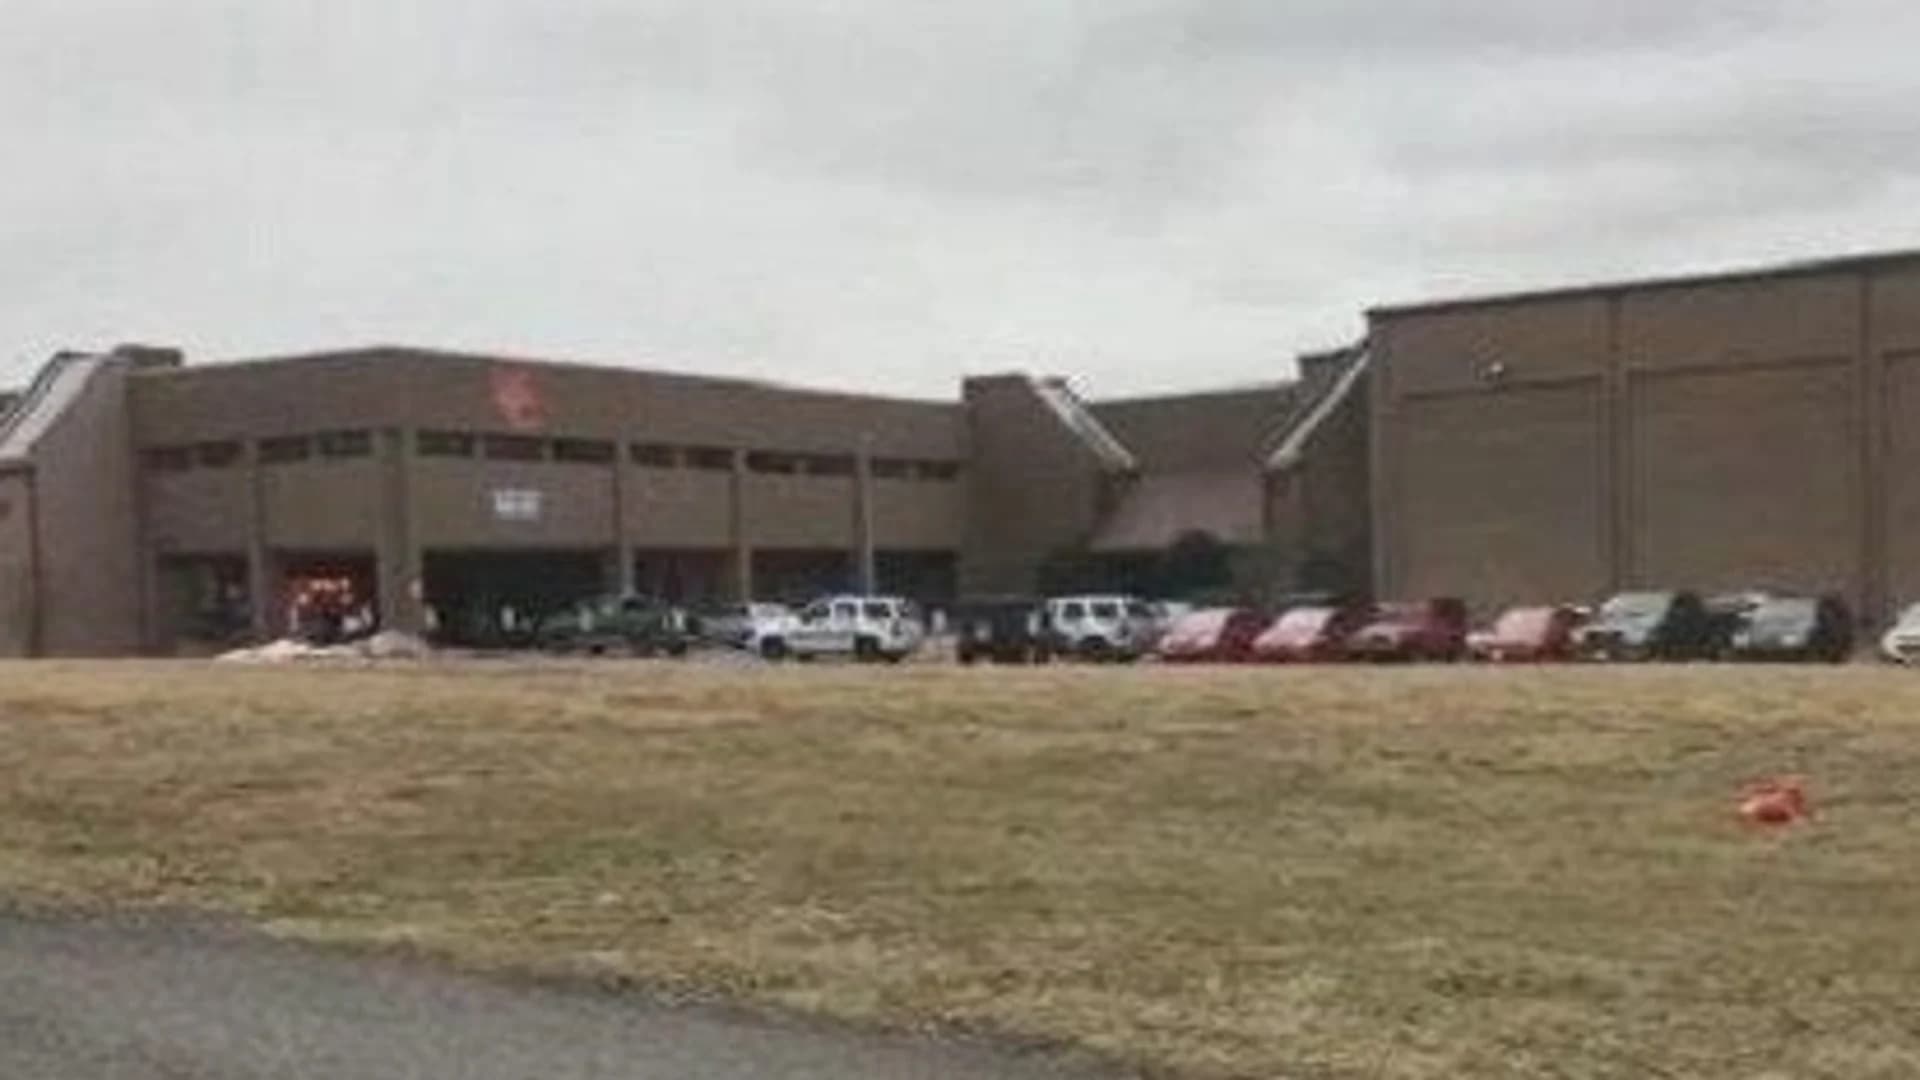 2 dead, 17 injured in Kentucky school shooting; suspect held